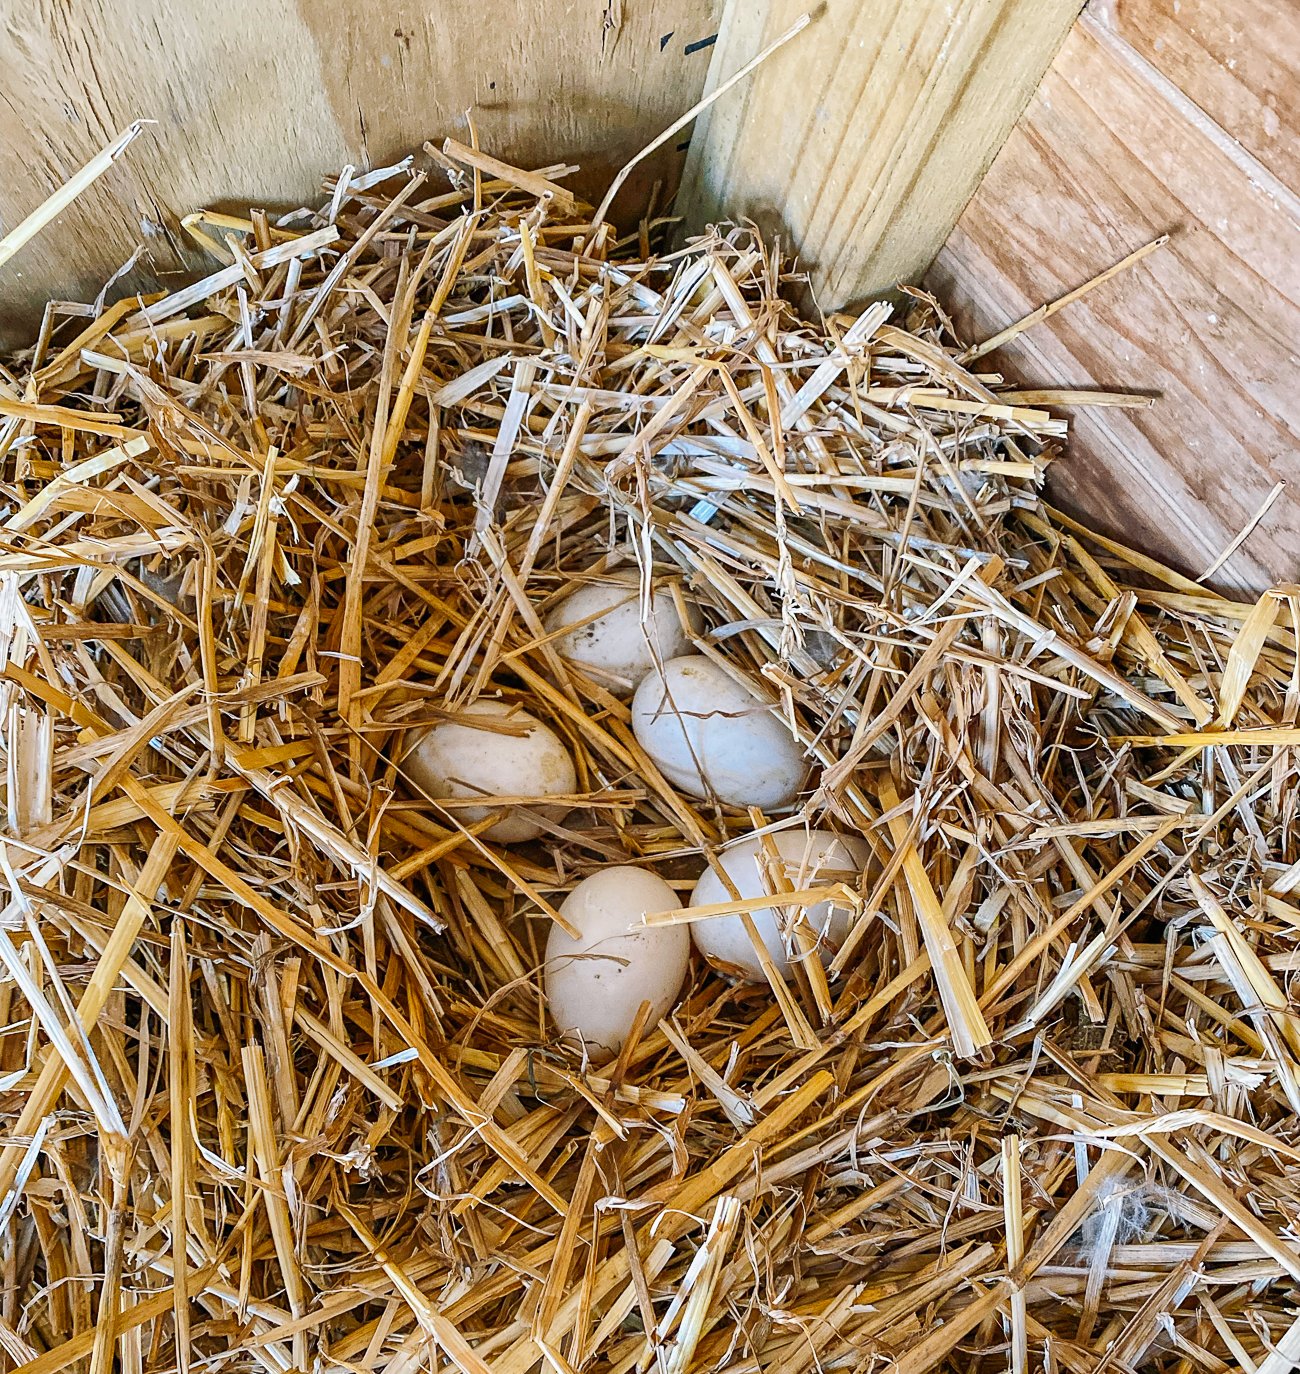 duck eggs in straw